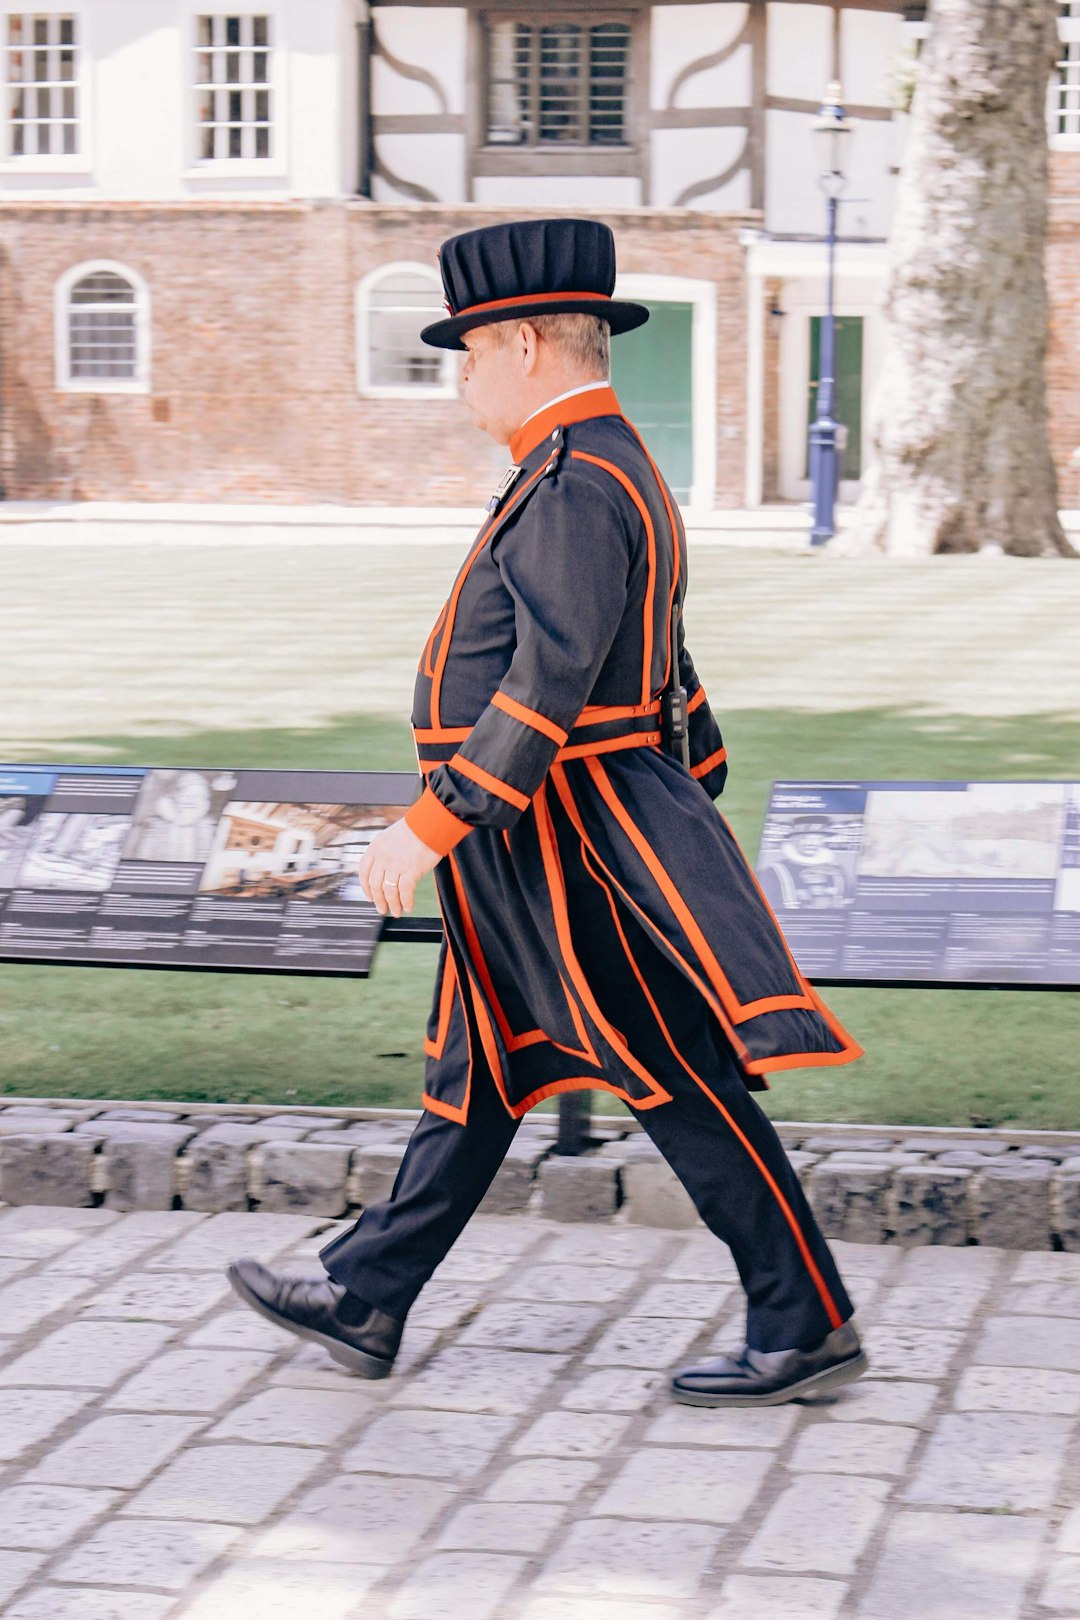 man in black and orange long sleeve dress walking on sidewalk during daytime